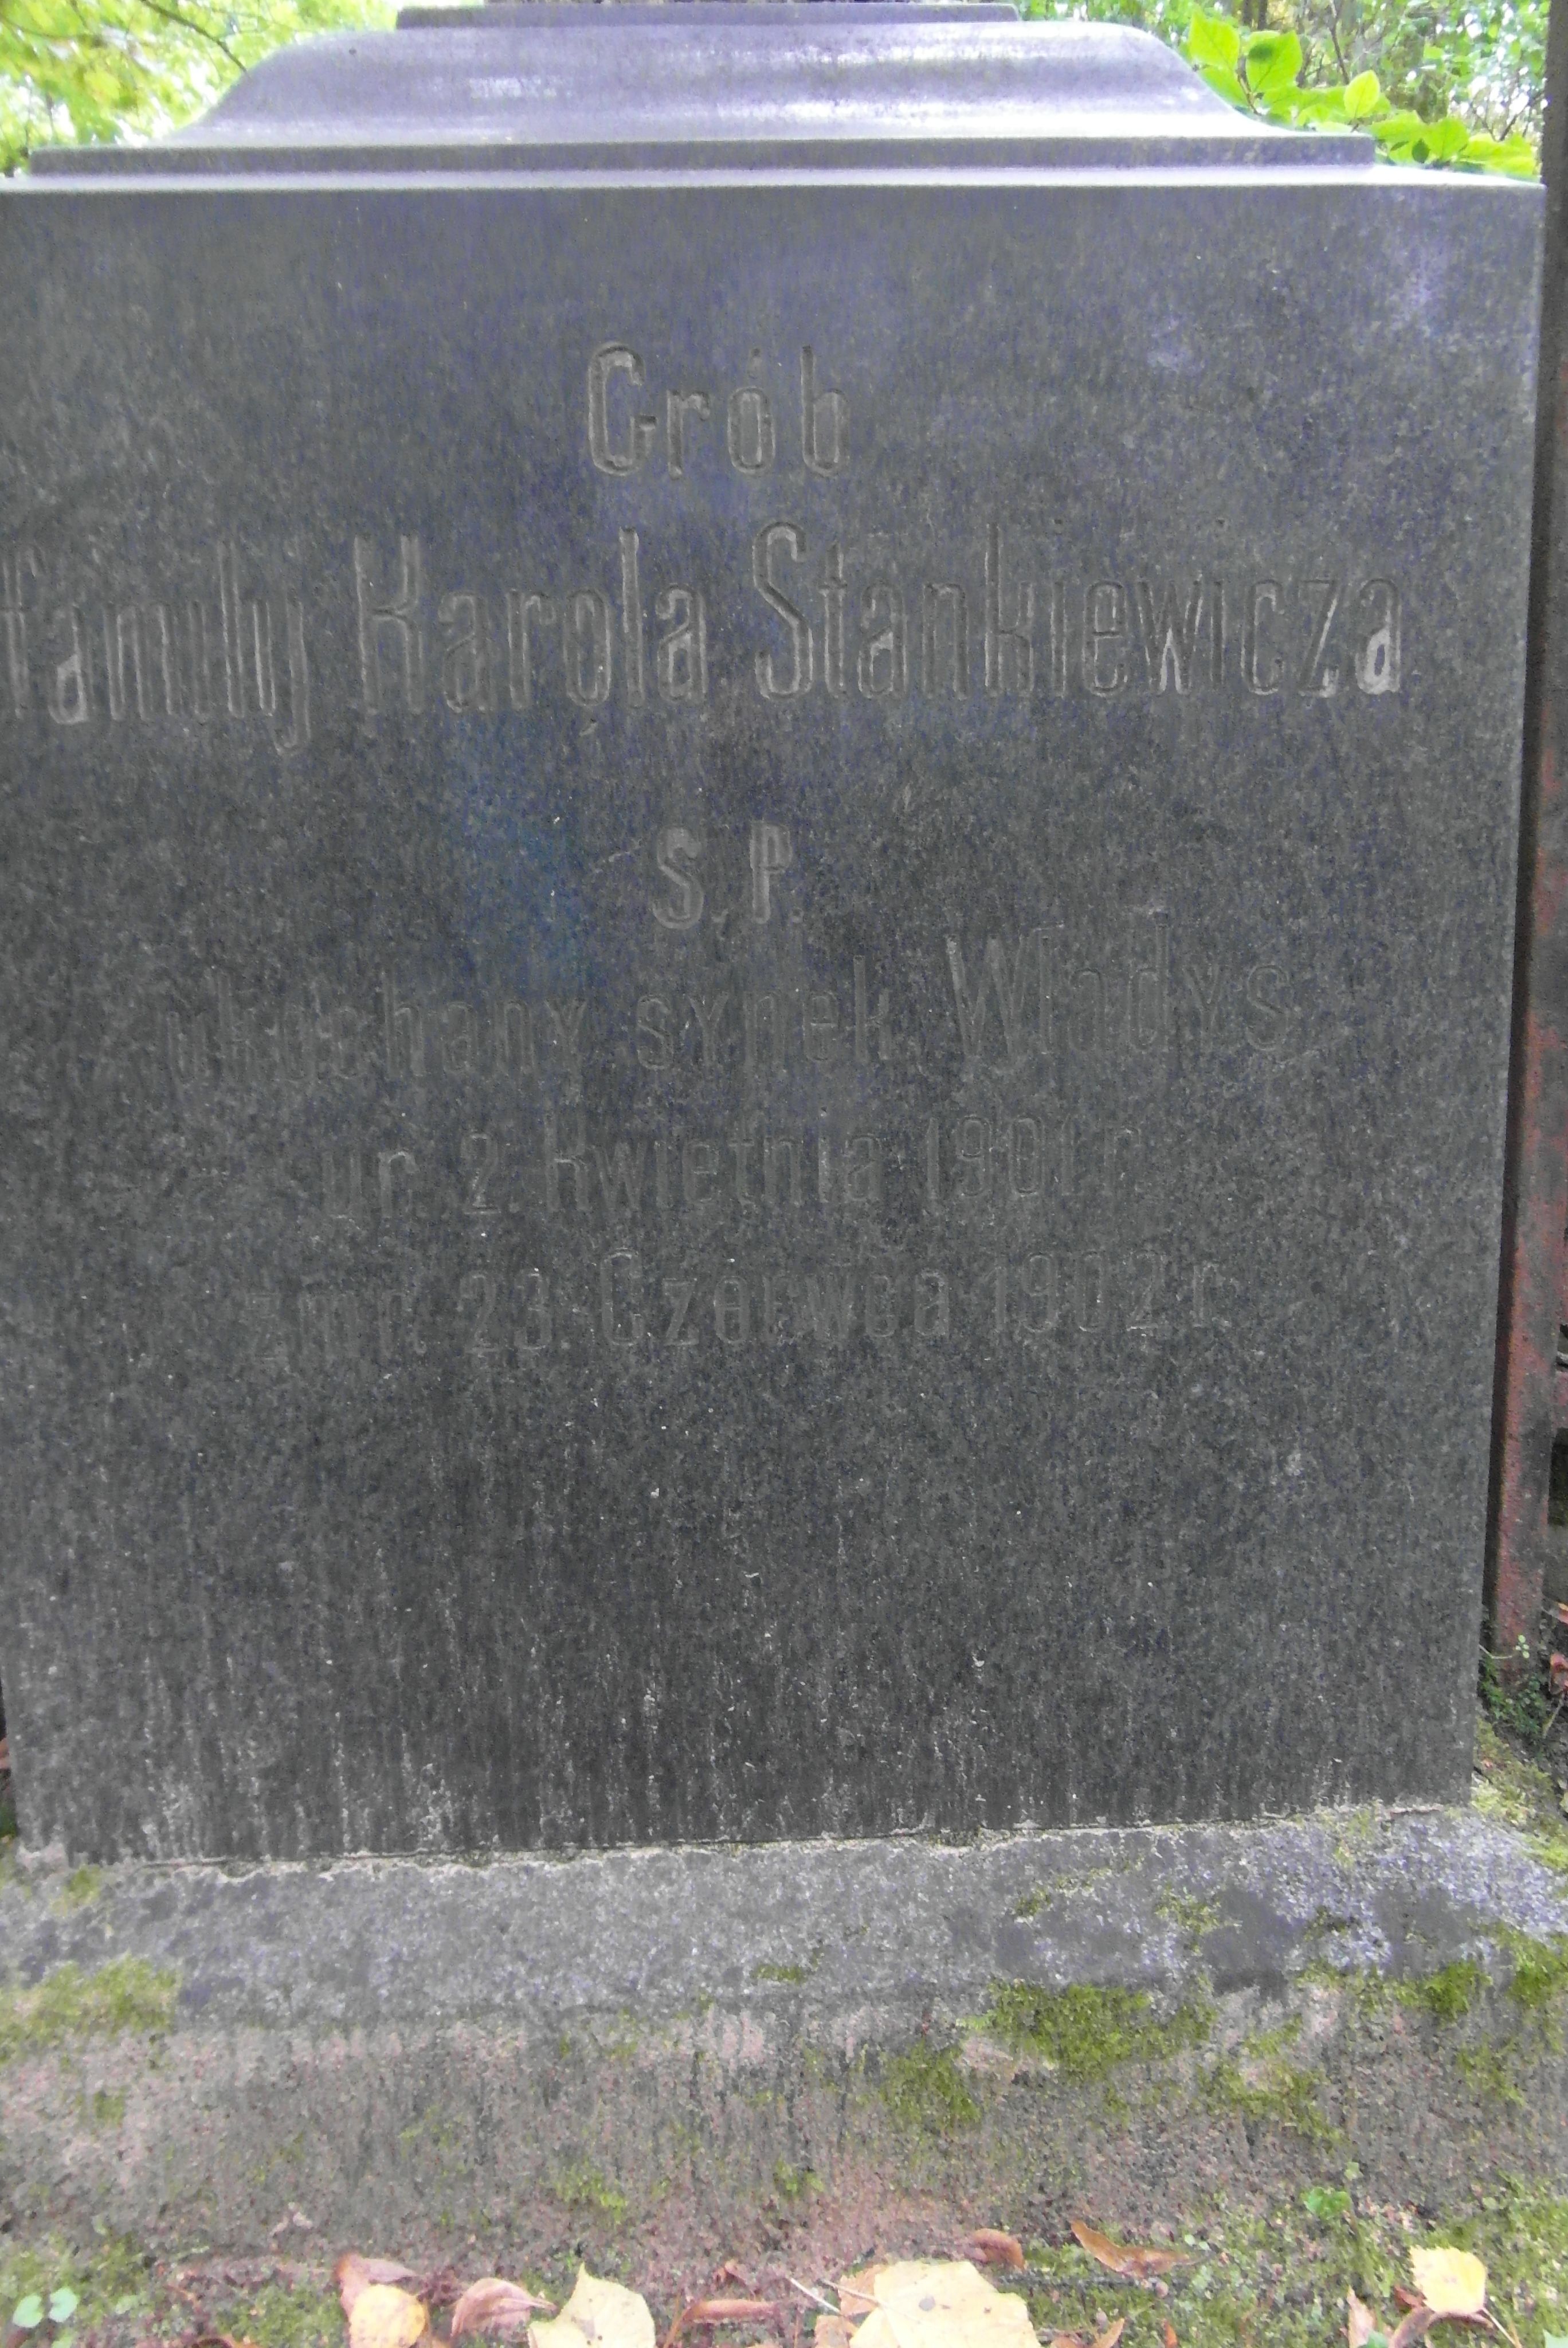 Inscription from the gravestone of Wladyslaw Stankiewicz, Karol Stankiewicz, St Michael's cemetery in Riga, as of 2021.